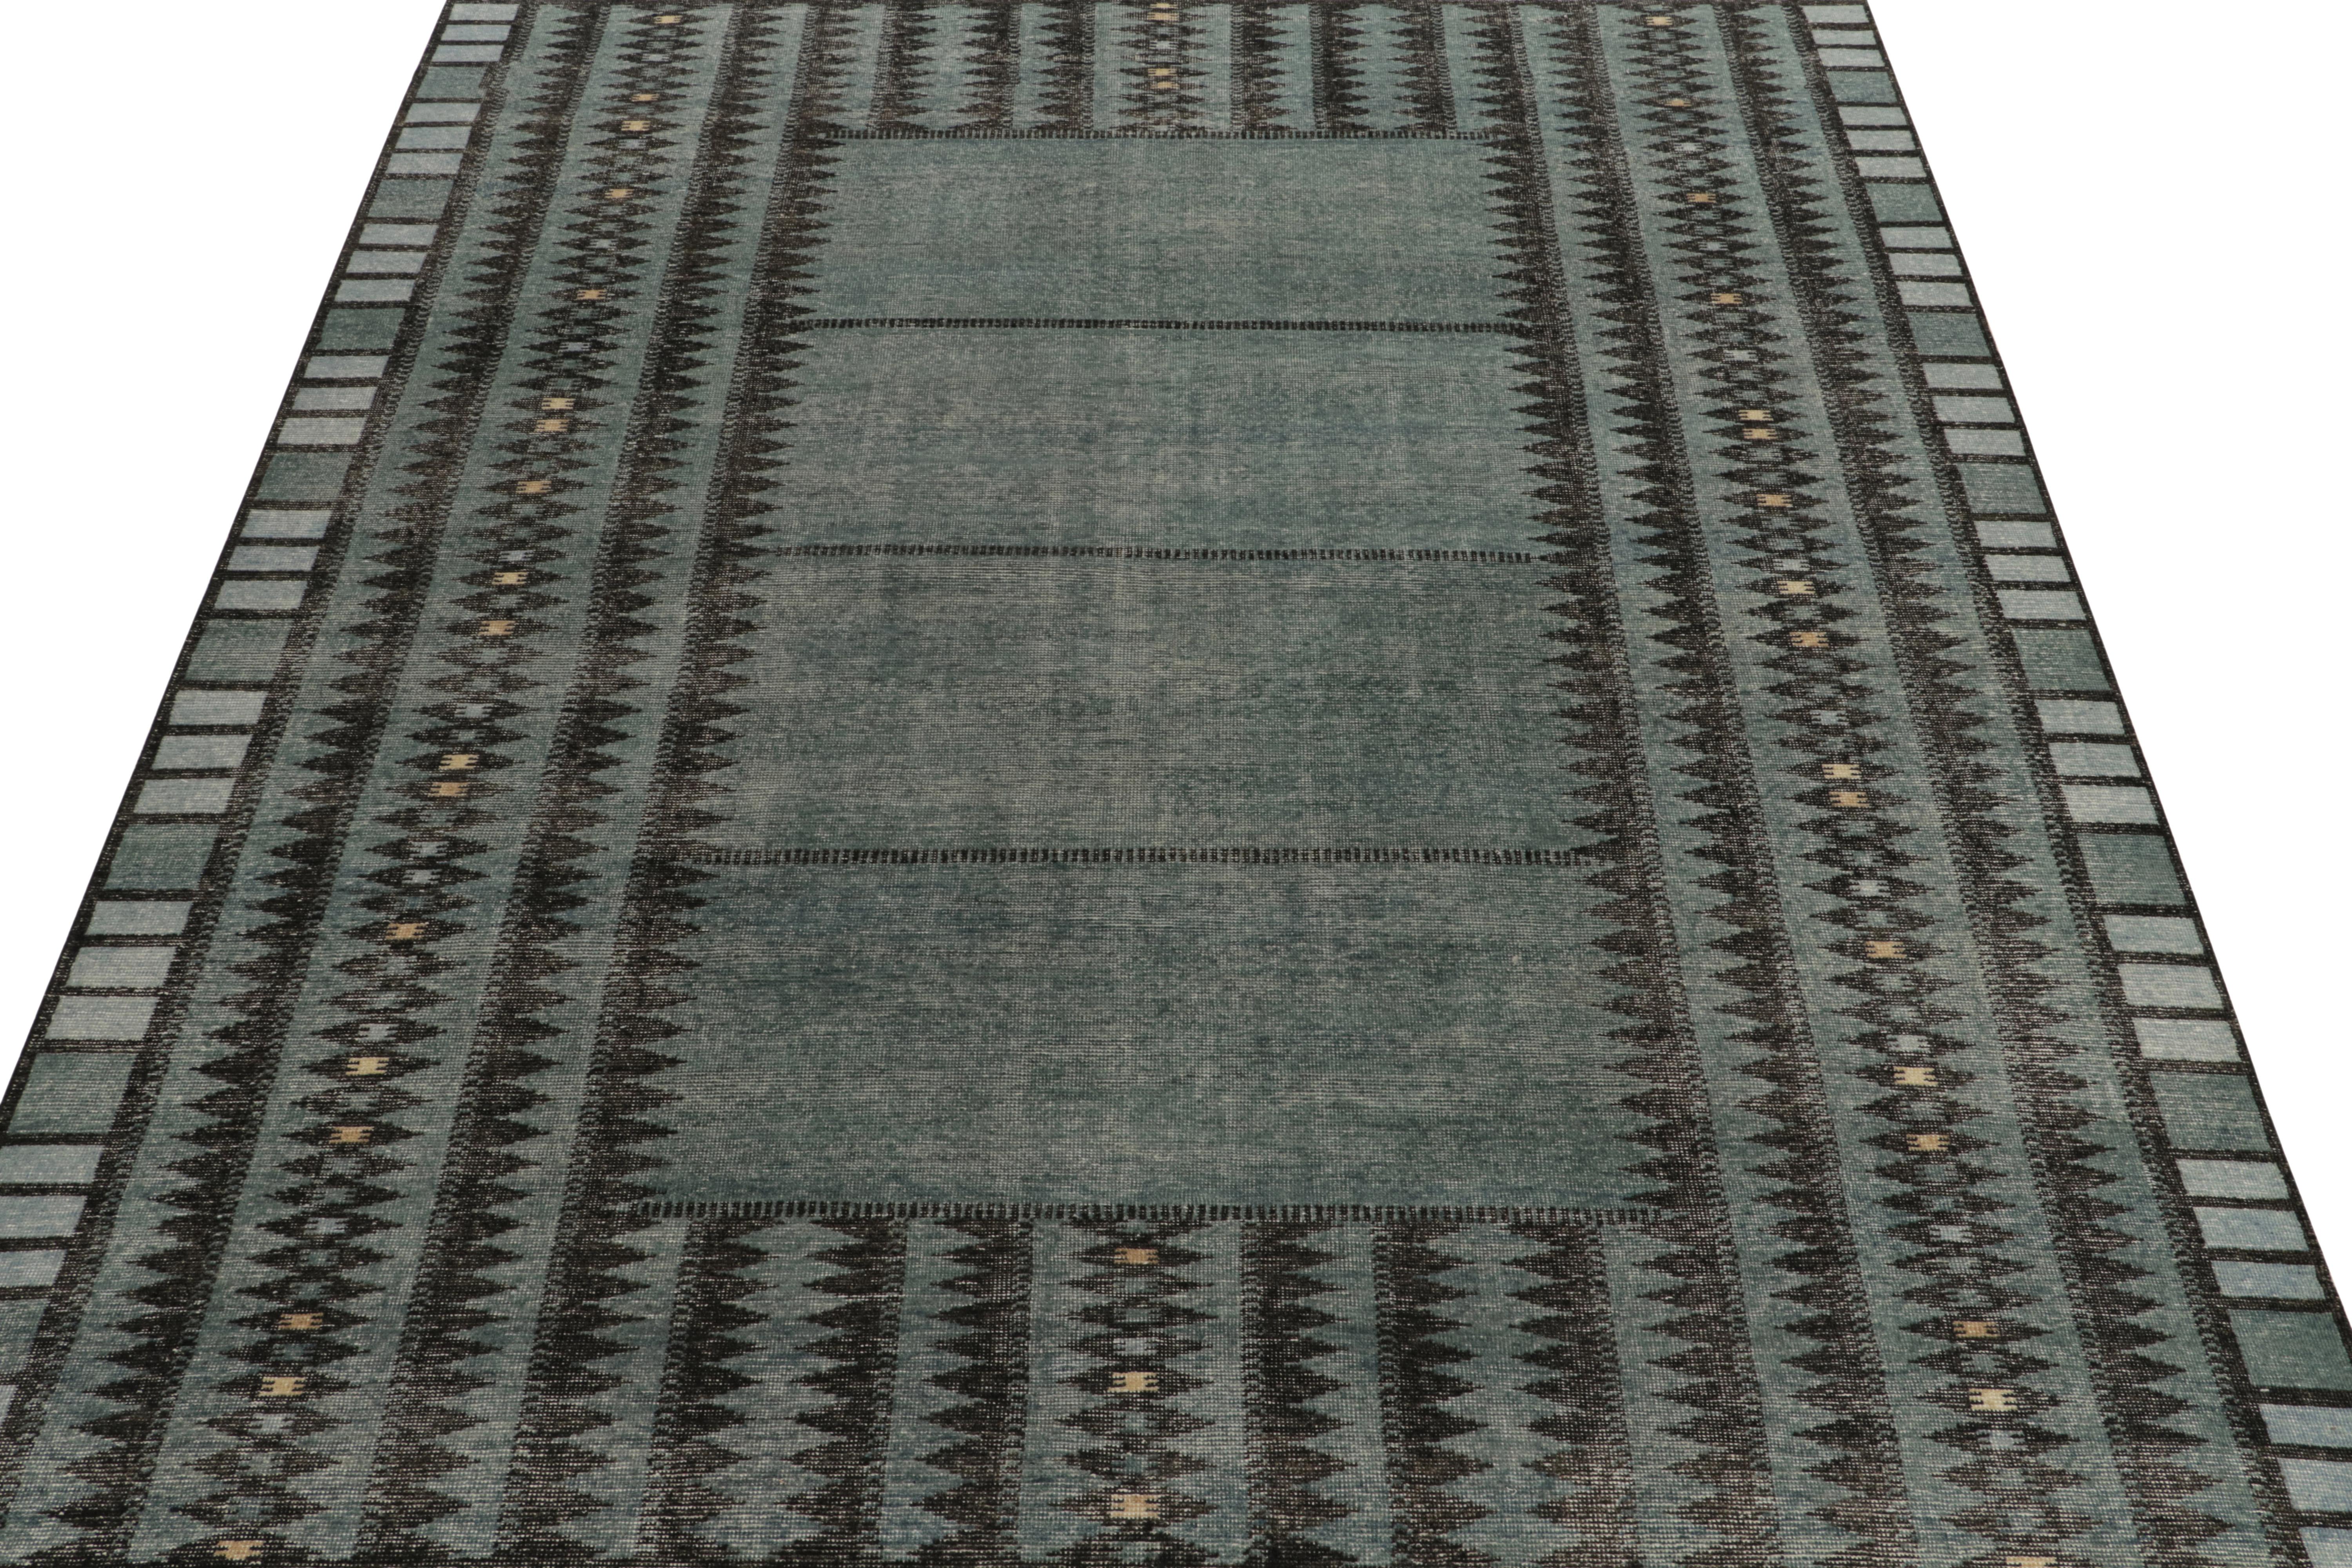 Der 9x12 große, handgeknüpfte Teppich aus der Homage-Kollektion von Rug & Kilim besticht durch seinen modernen Deko-Look. Die lebhafte Skala zeugt von Streifen und geometrischen Wiederholungen in Ägäisblau und Kohleschwarz, die durch cremefarbene